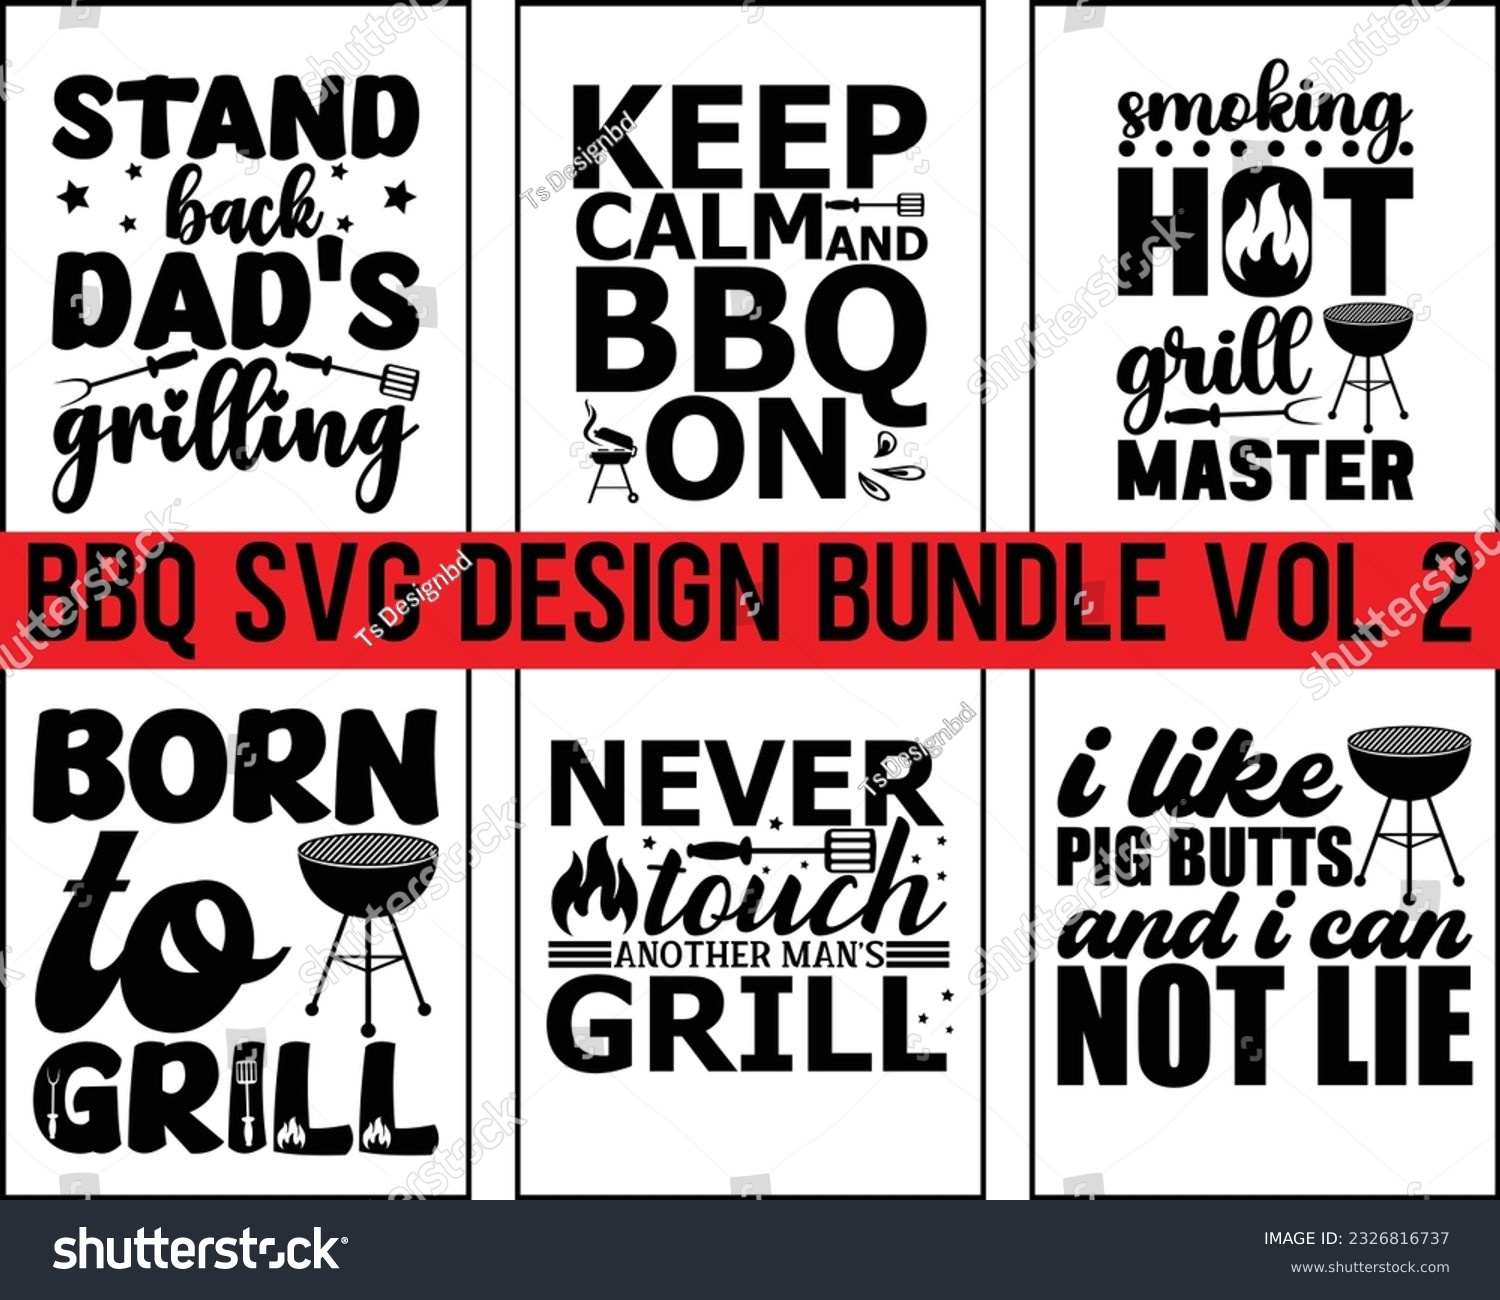 SVG of Barbecue svg Design Bundle Vol 2,Bbq Svg Bundle,BBQ SVG design and craft files, Barbeque party,Funny BBQ,bar-b-q,kitchen, master,Bbq eps File,Svg Bundle svg